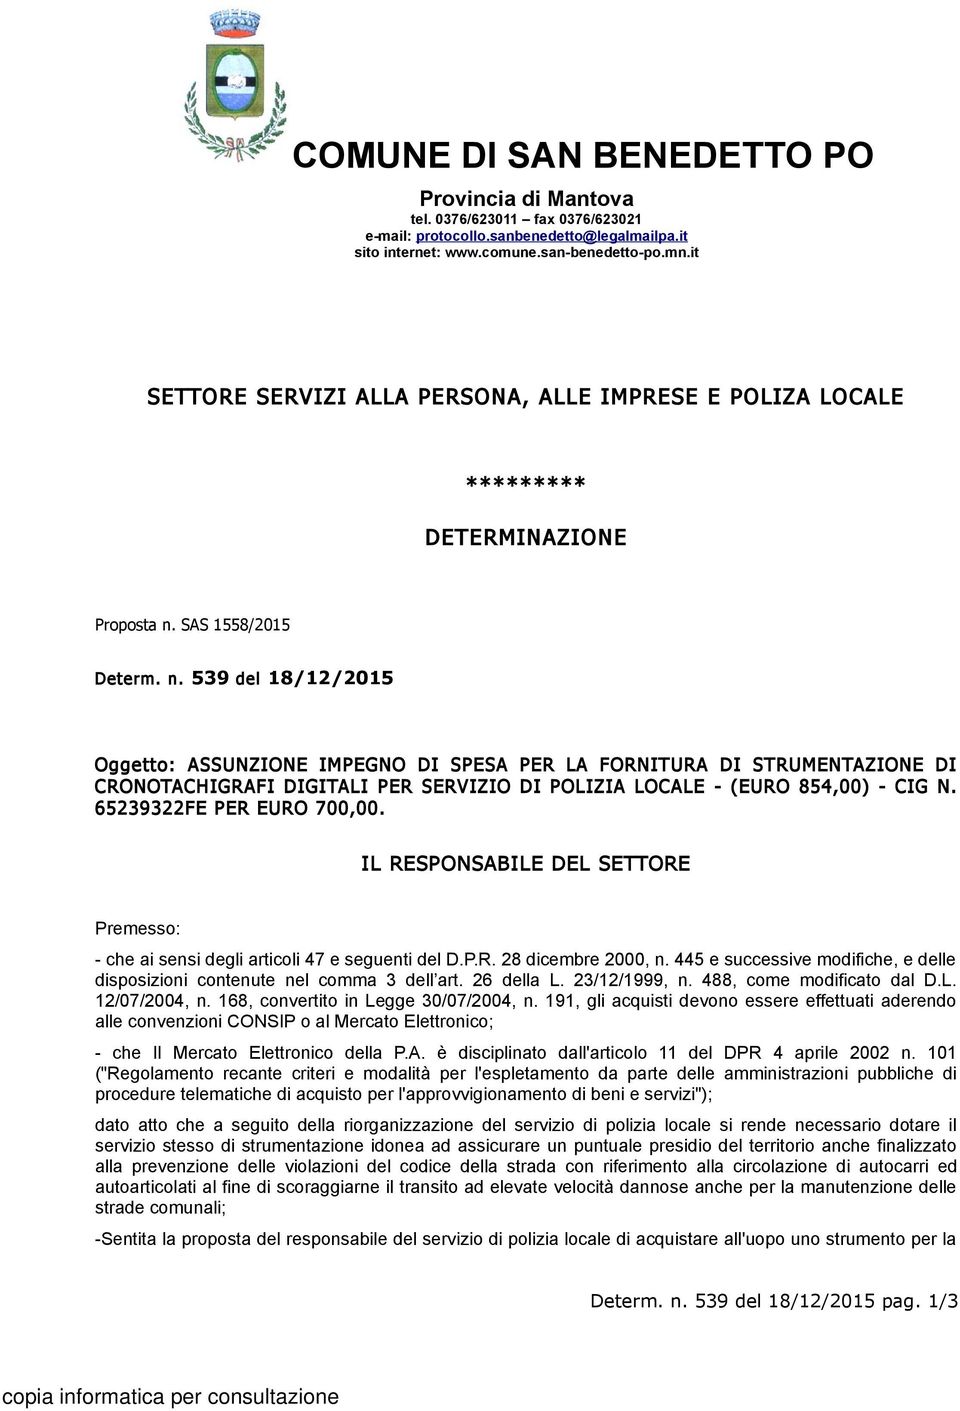 SAS 1558/2015 Determ. n. 539 del 18/12/2015 Oggetto: ASSUNZIONE IMPEGNO DI SPESA PER LA FORNITURA DI STRUMENTAZIONE DI CRONOTACHIGRAFI DIGITALI PER SERVIZIO DI POLIZIA LOCALE - (EURO 854,00) - CIG N.